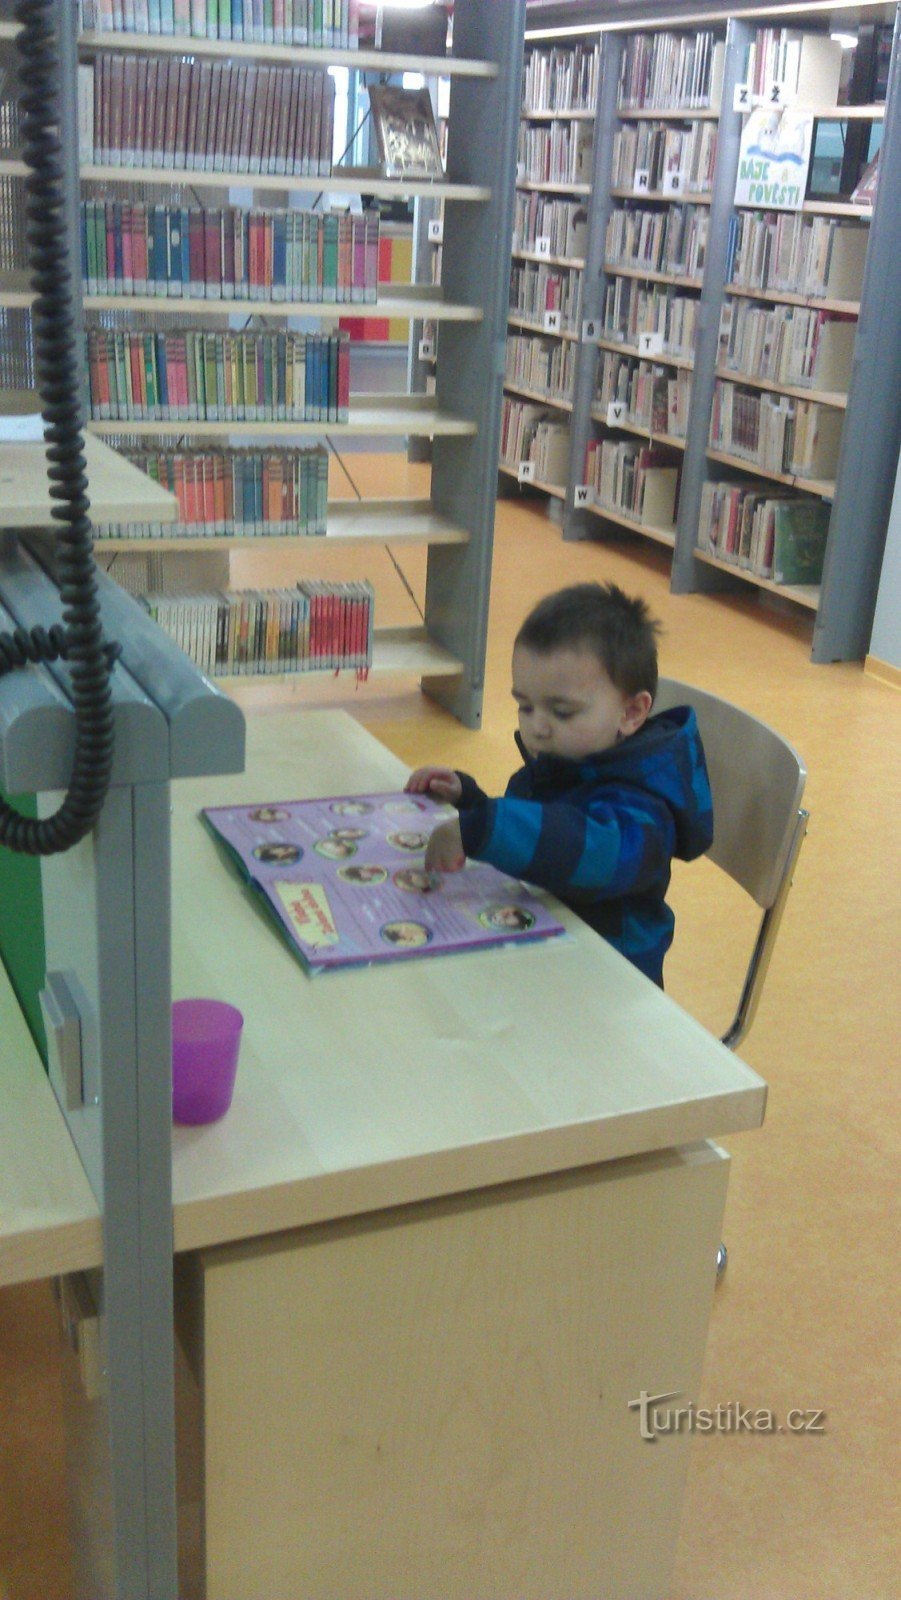 børneafdeling - bibliotek